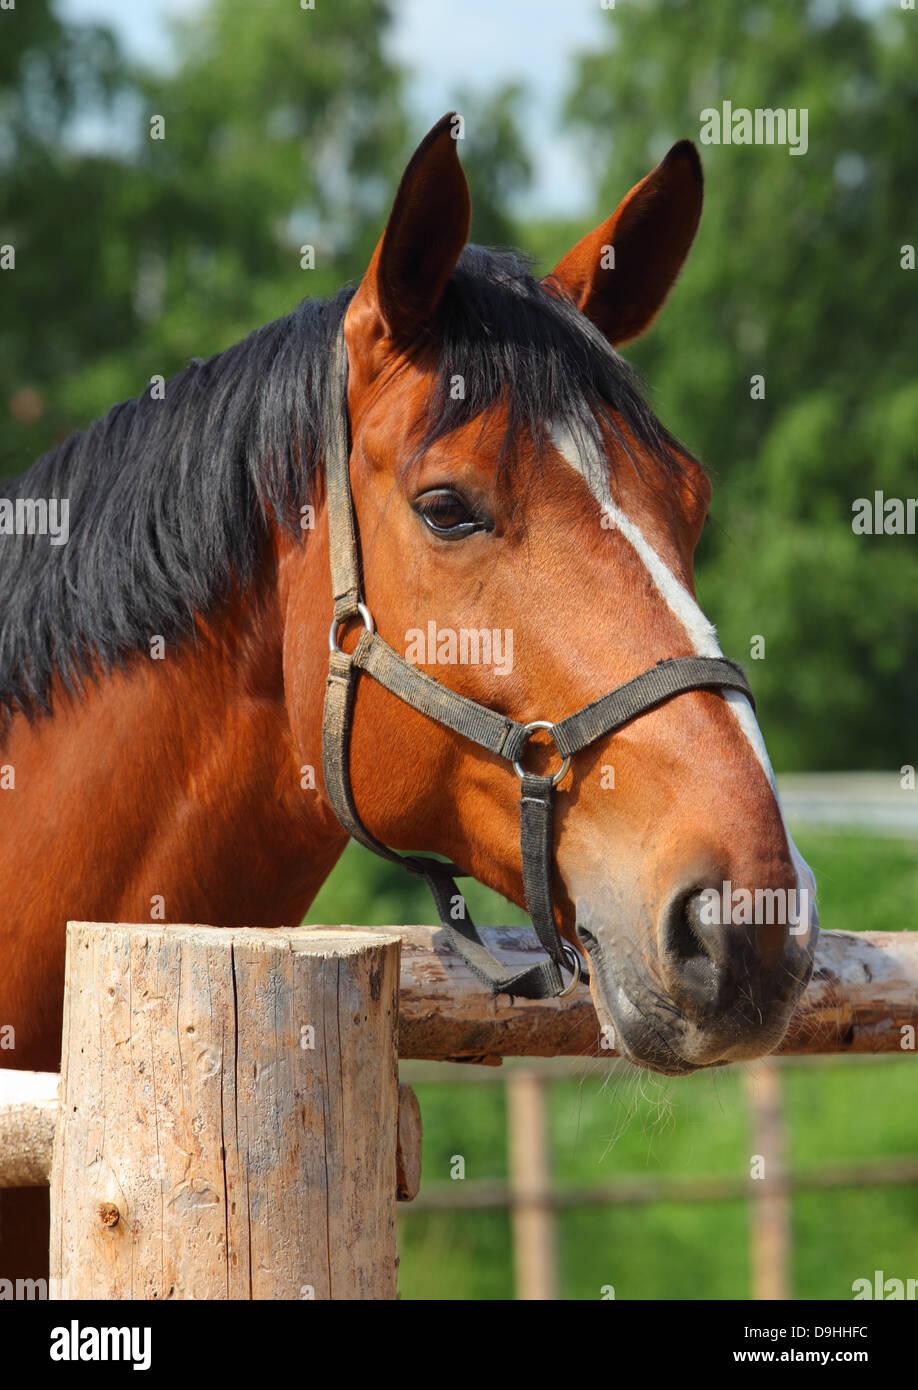 Schönes Pferd mit Blick auf einen hölzernen Zaun Stockfoto